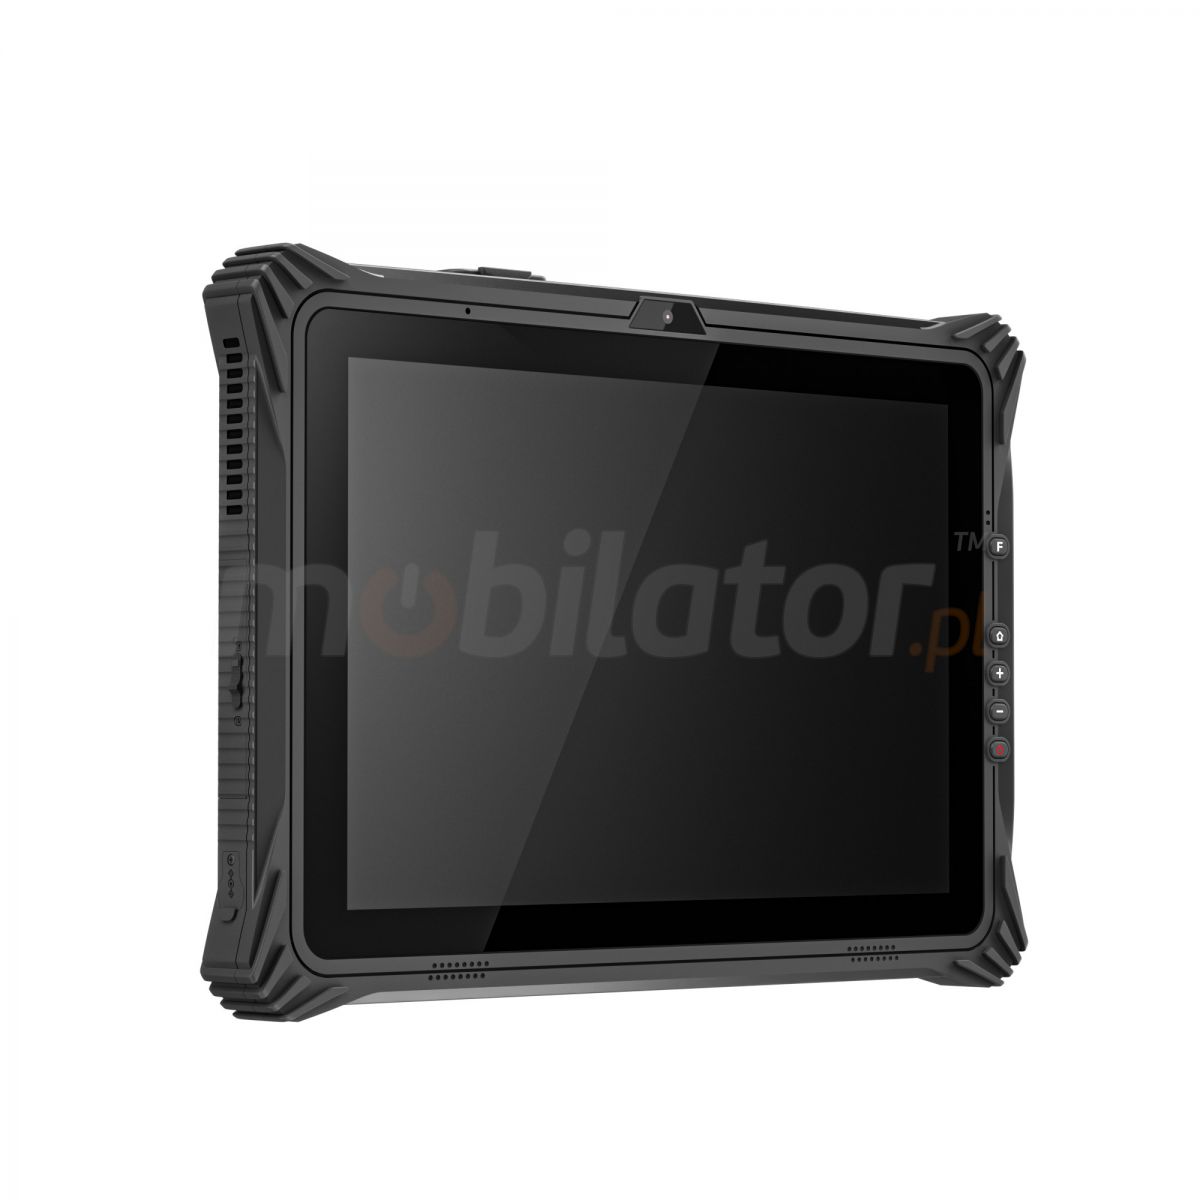 Emdoor I20U v.11 - Wstrzsoodporny 12.2 calowy tablet z Windows 10 IoT, Bluetooth 4.2, czytnikiem kodw 2D N3680 Honeywell, NFC , 4G, AR FILM, 8GB RAM i 128GB ROM